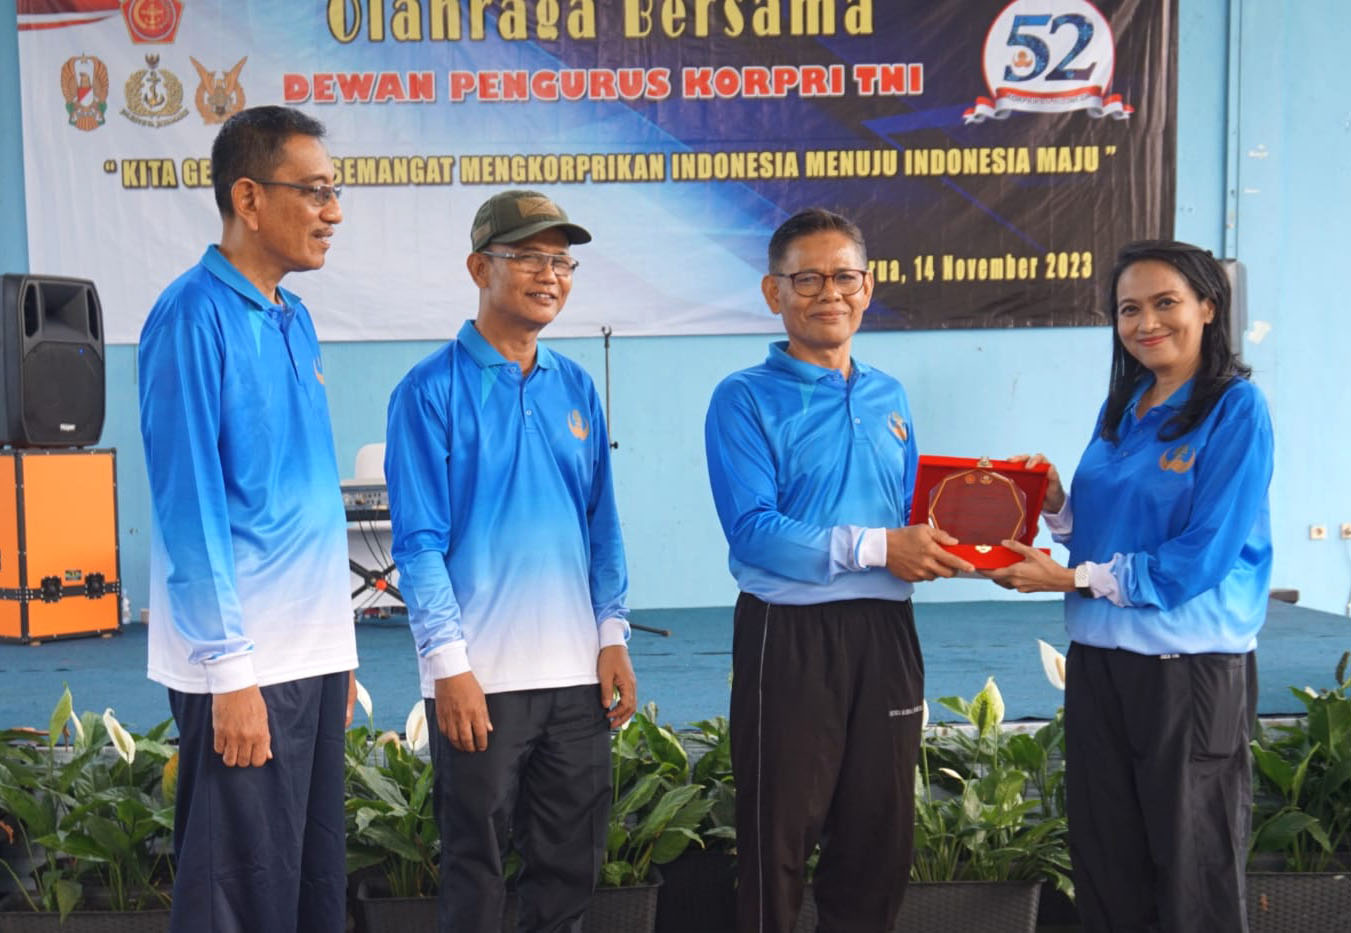 Jaga Soliditas Korpri TNI Gelar Olahraga Bersama Dalam Rangka Menyambut HUT ke-52 fot dok